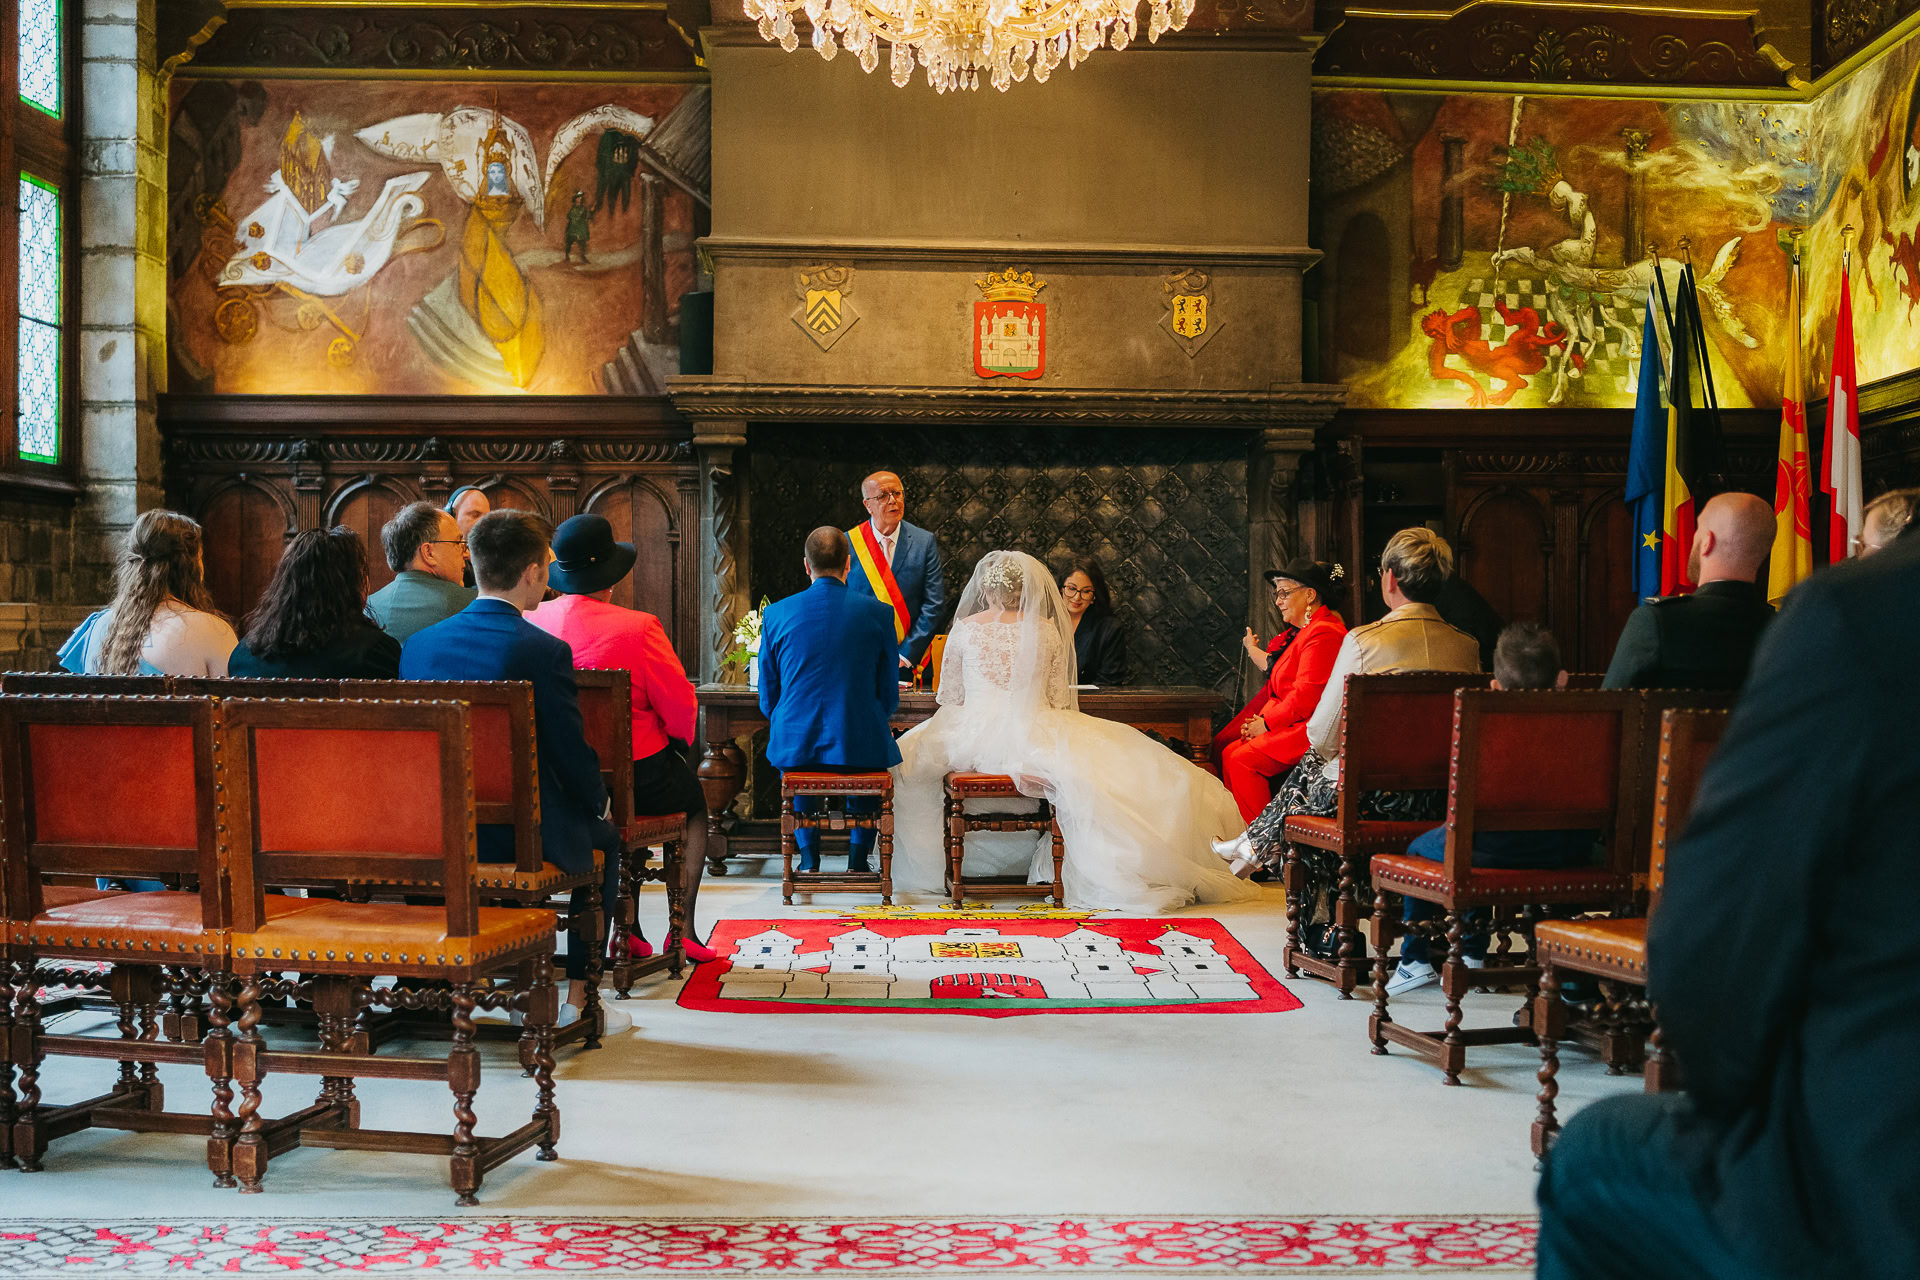 Cérémonie de mariage dans une grande salle ornée de peintures murales et d'armoiries richement détaillées, mettant en vedette les mariés assis face à un orateur, entourés d'invités.